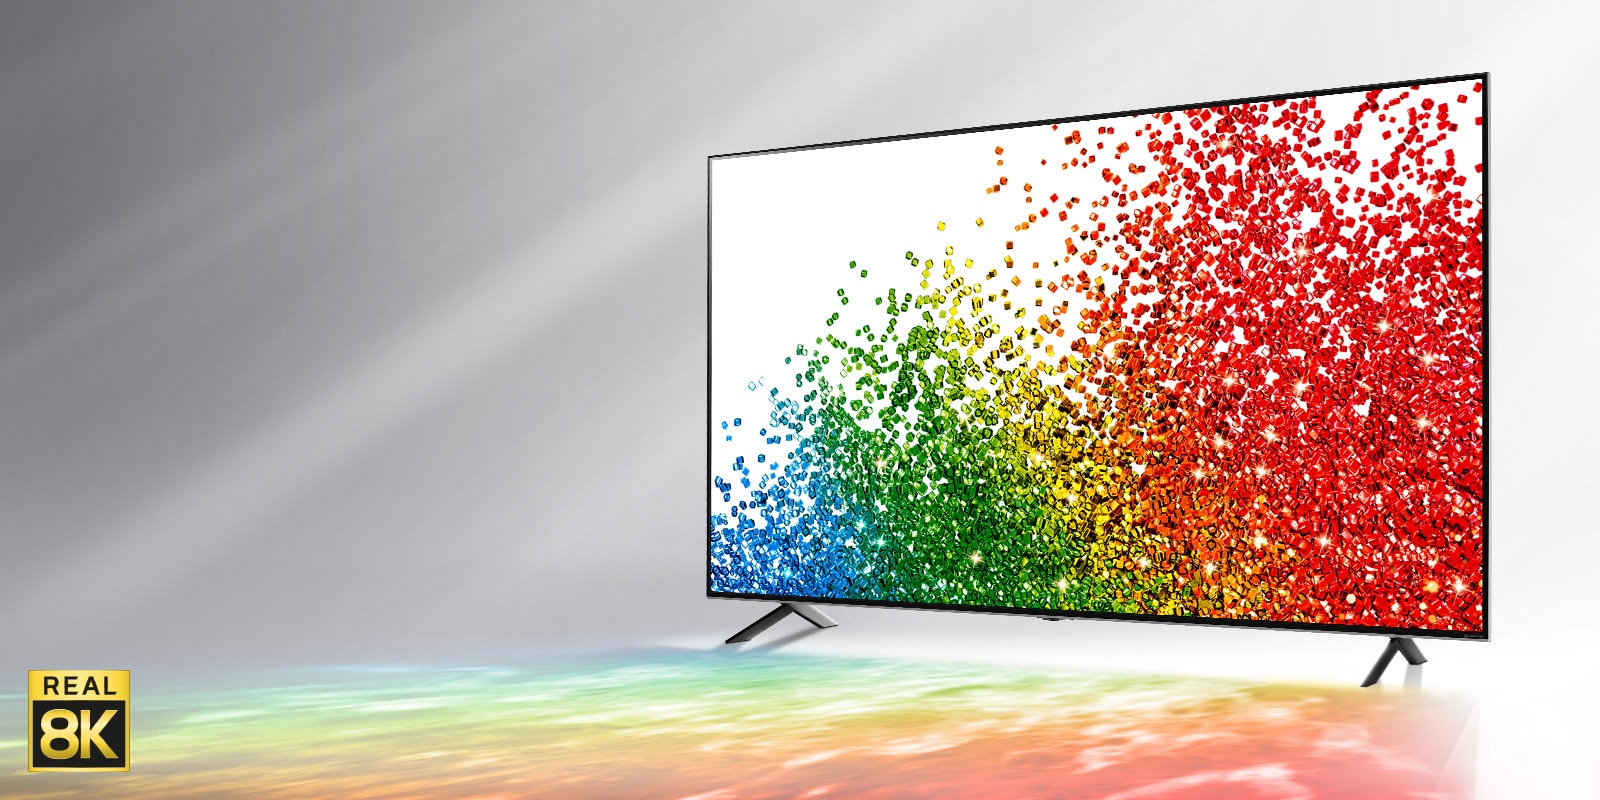 Hình ảnh TV LG NanoCell trên nền xám với màu sắc từ màn hình phản chiếu lên phần sàn trước TV.